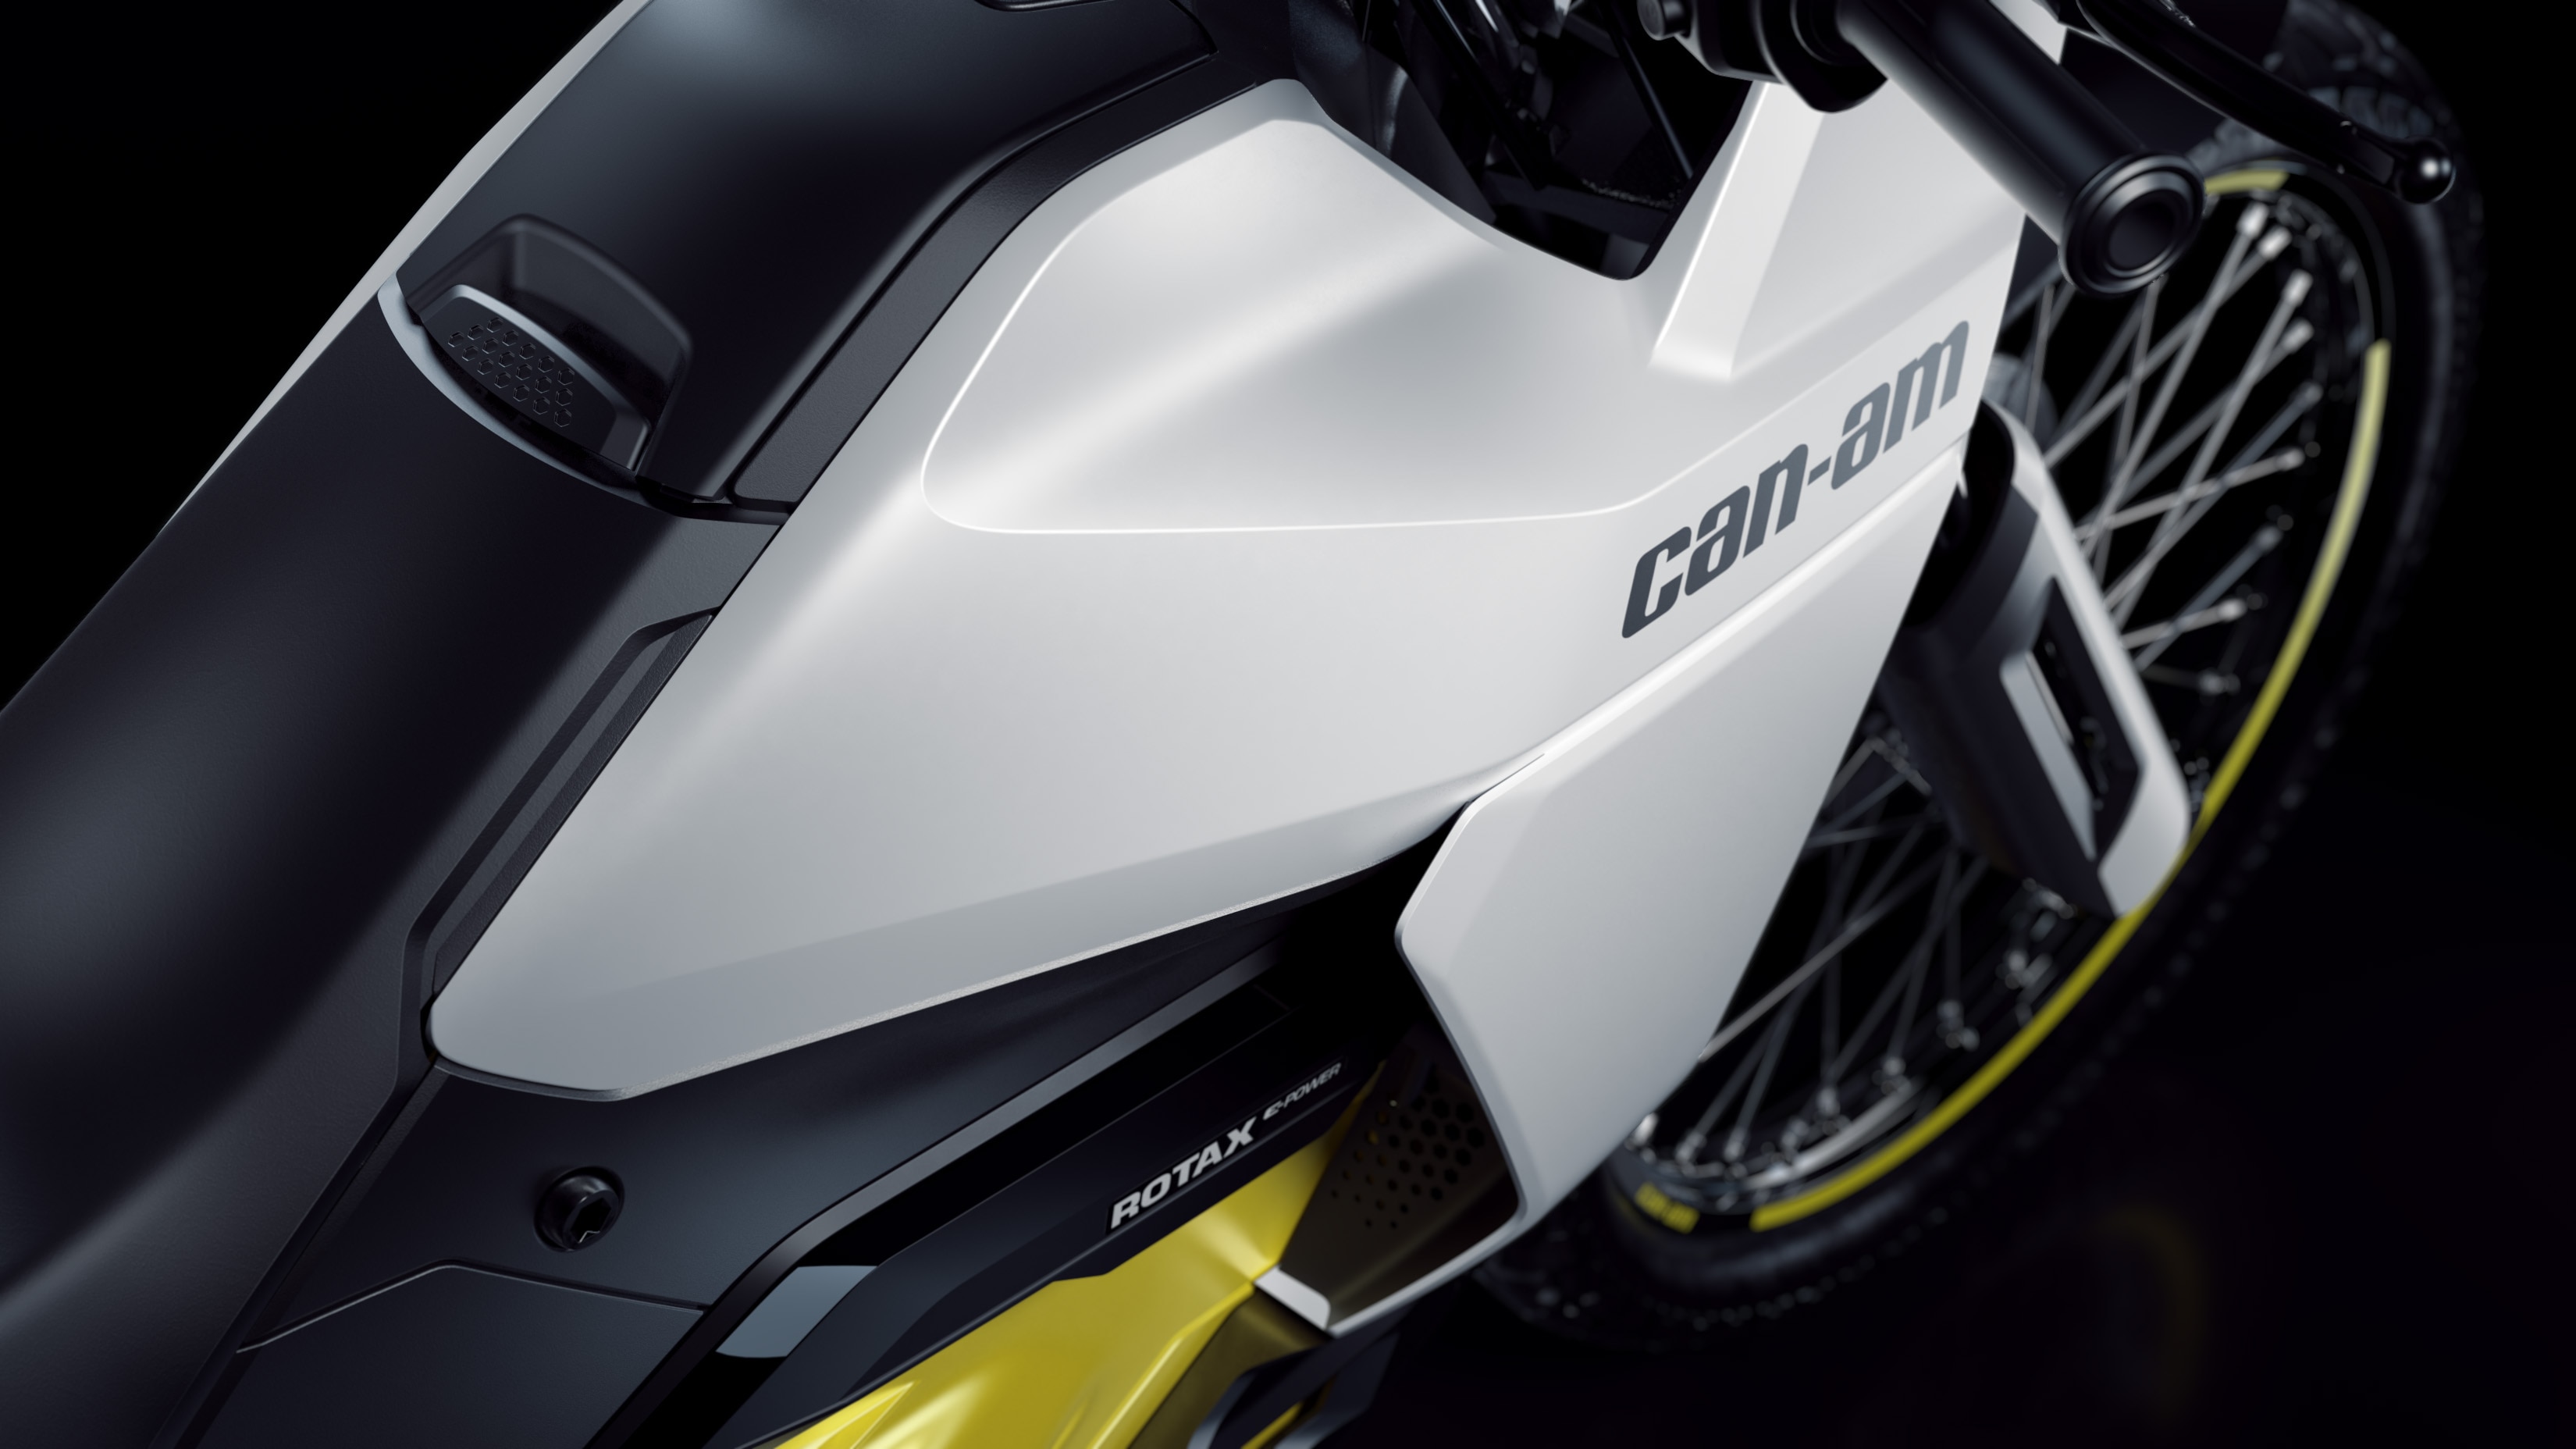 Ingezoomd op de motorkap van de Can-Am Origin-motorfiets